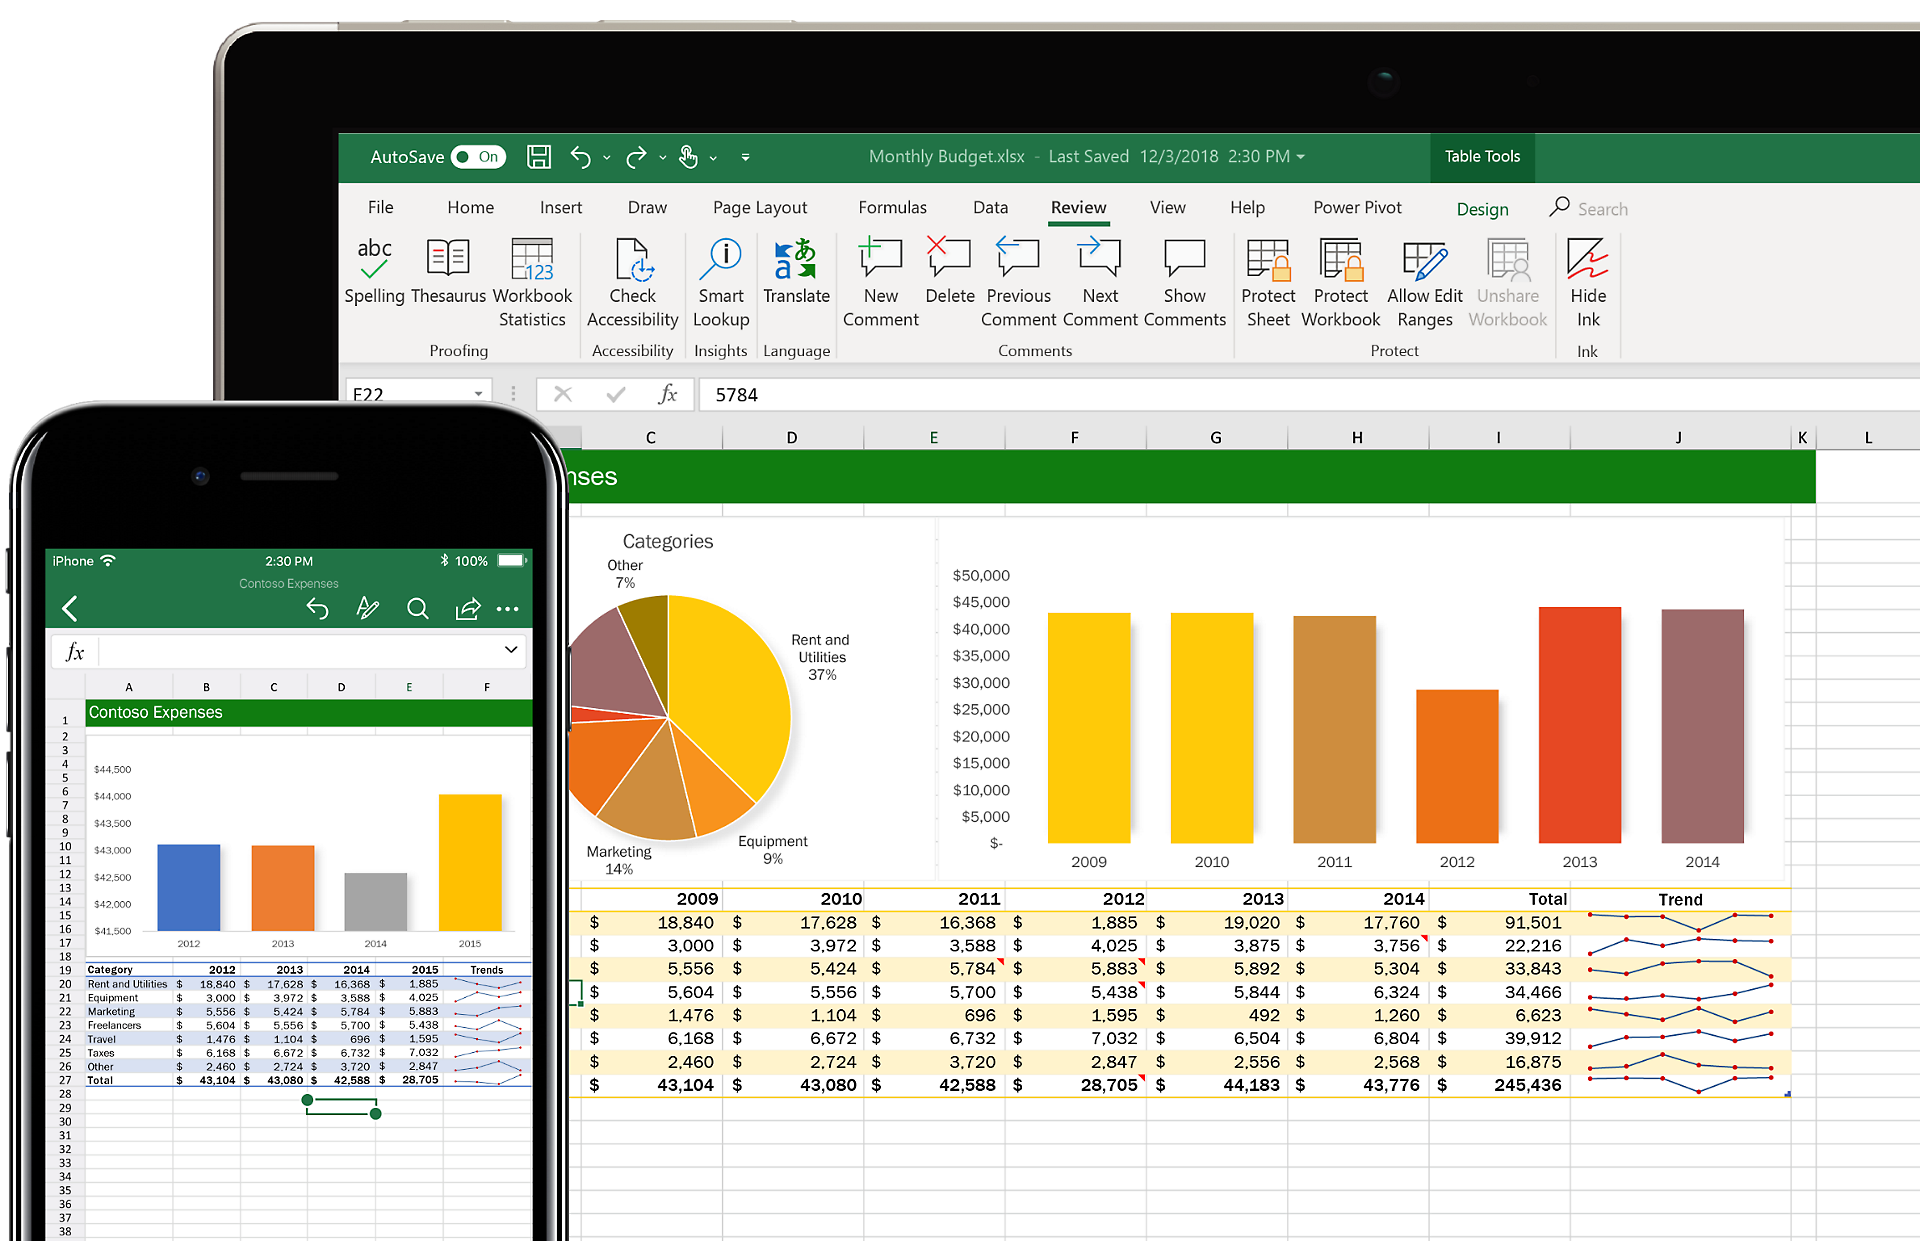 Microsoft Excel 2007: Bạn muốn trở thành chuyên gia tài chính và quản lí ngân sách cá nhân một cách tốt hơn? Hãy bắt đầu học về Microsoft Excel 2007 - phần mềm tính toán và xử lí bảng tính hàng đầu thế giới. Nắm vững kỹ năng sử dụng Excel 2007 sẽ giúp bạn đơn giản hoá công việc, tối đa hóa năng suất và quản lý tài chính hiệu quả hơn. 